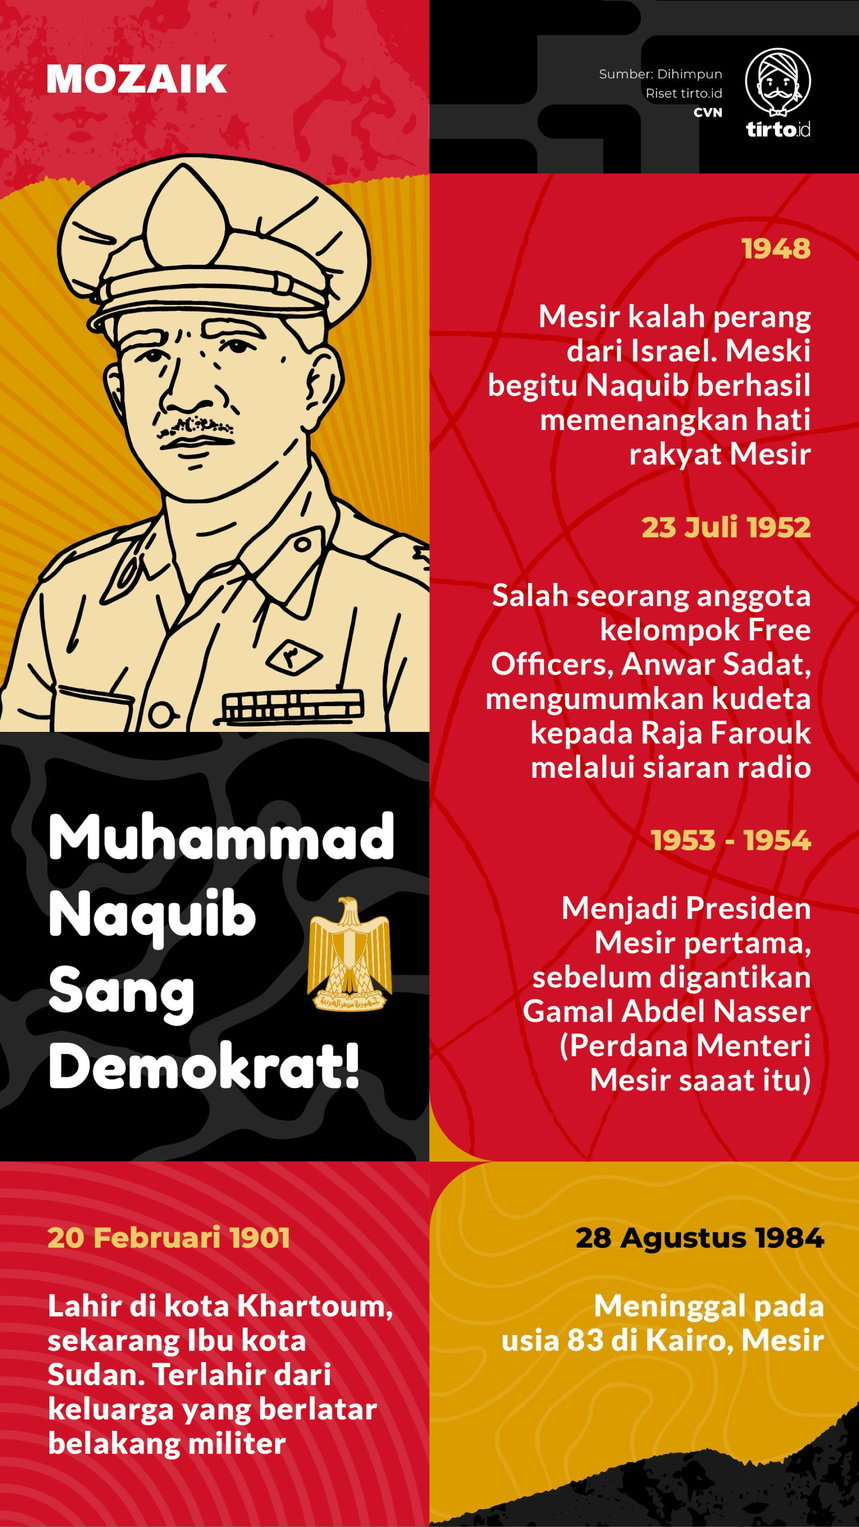 Infografik Mozaik Muhammad Naquib